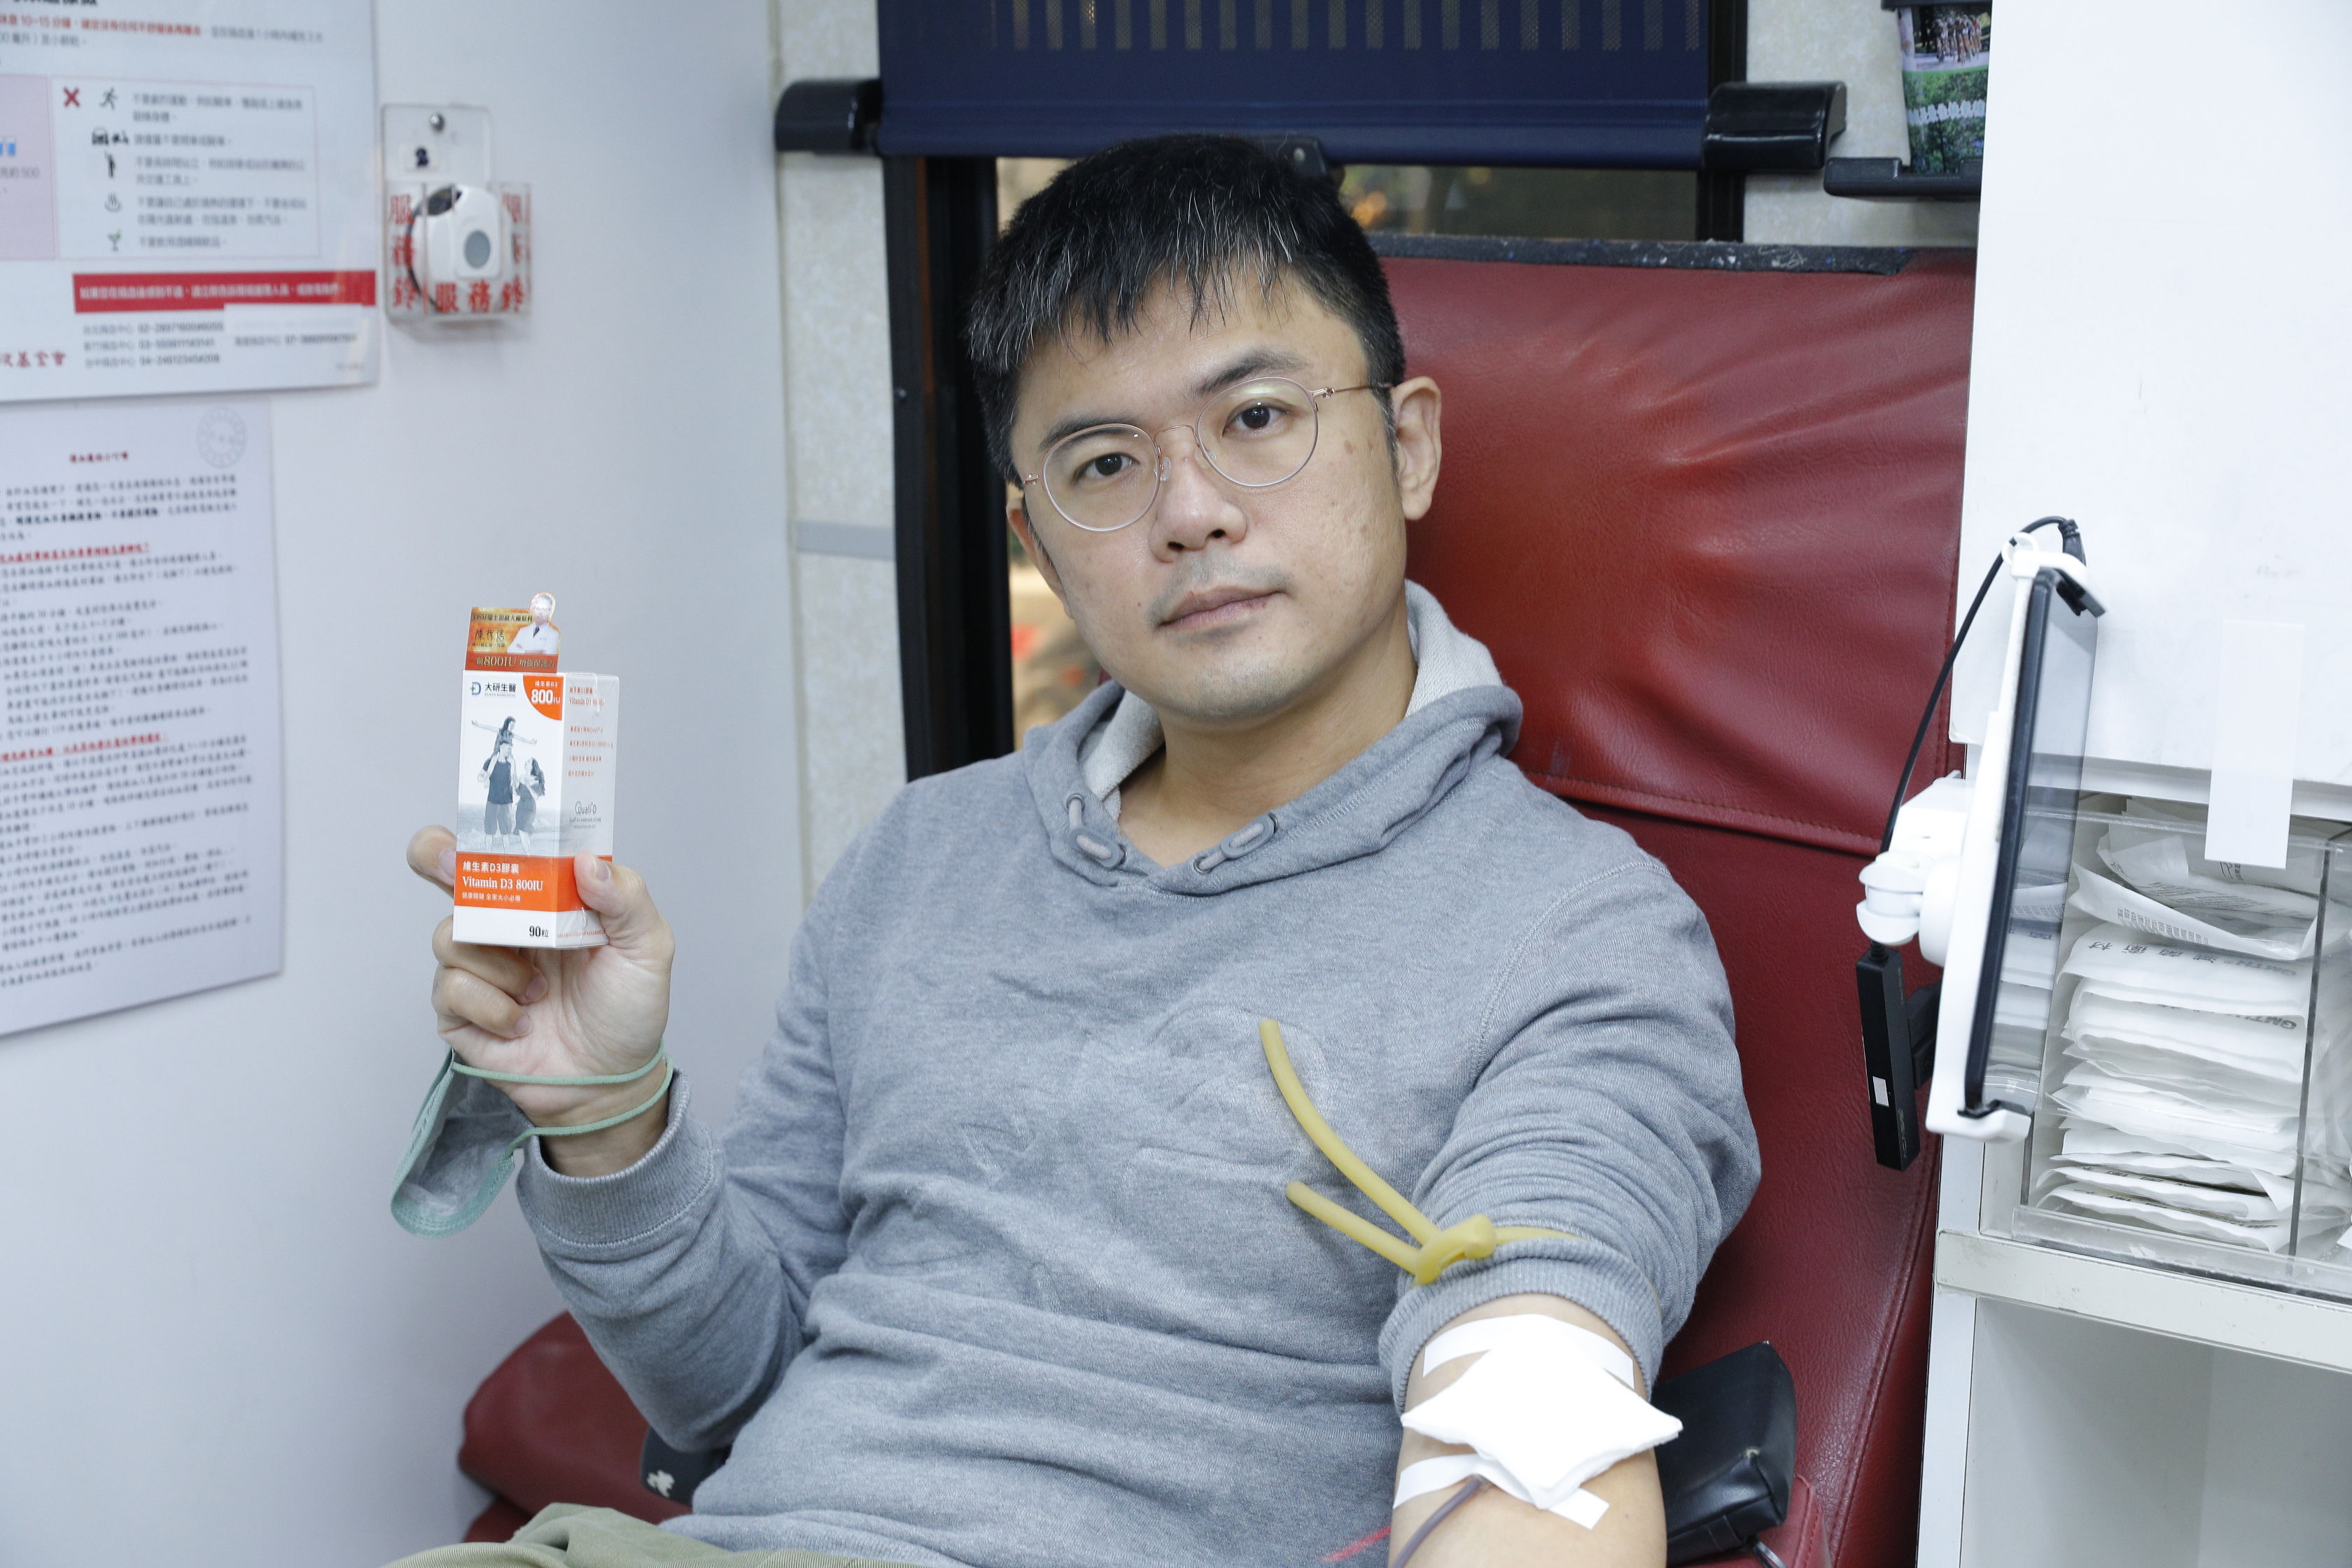 ▲▼ETtoday捐血活動贊助案(大研生醫&船井) 。（圖／記者湯興漢攝）